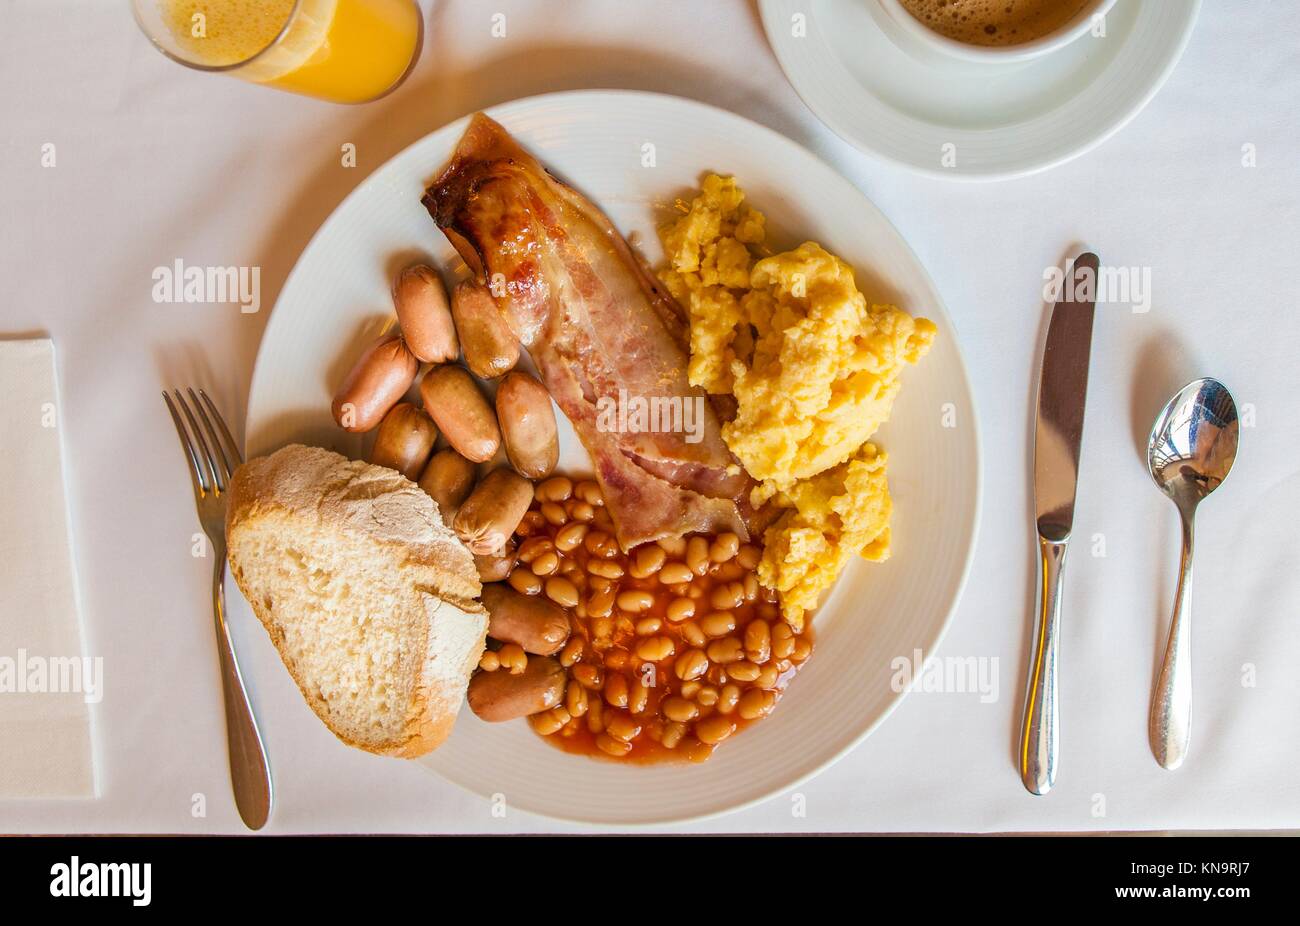 Nahrhaftes englisches Frühstück auf einem Teller mit Brot, Orangensaft und Kaffee Tasse. Stockfoto